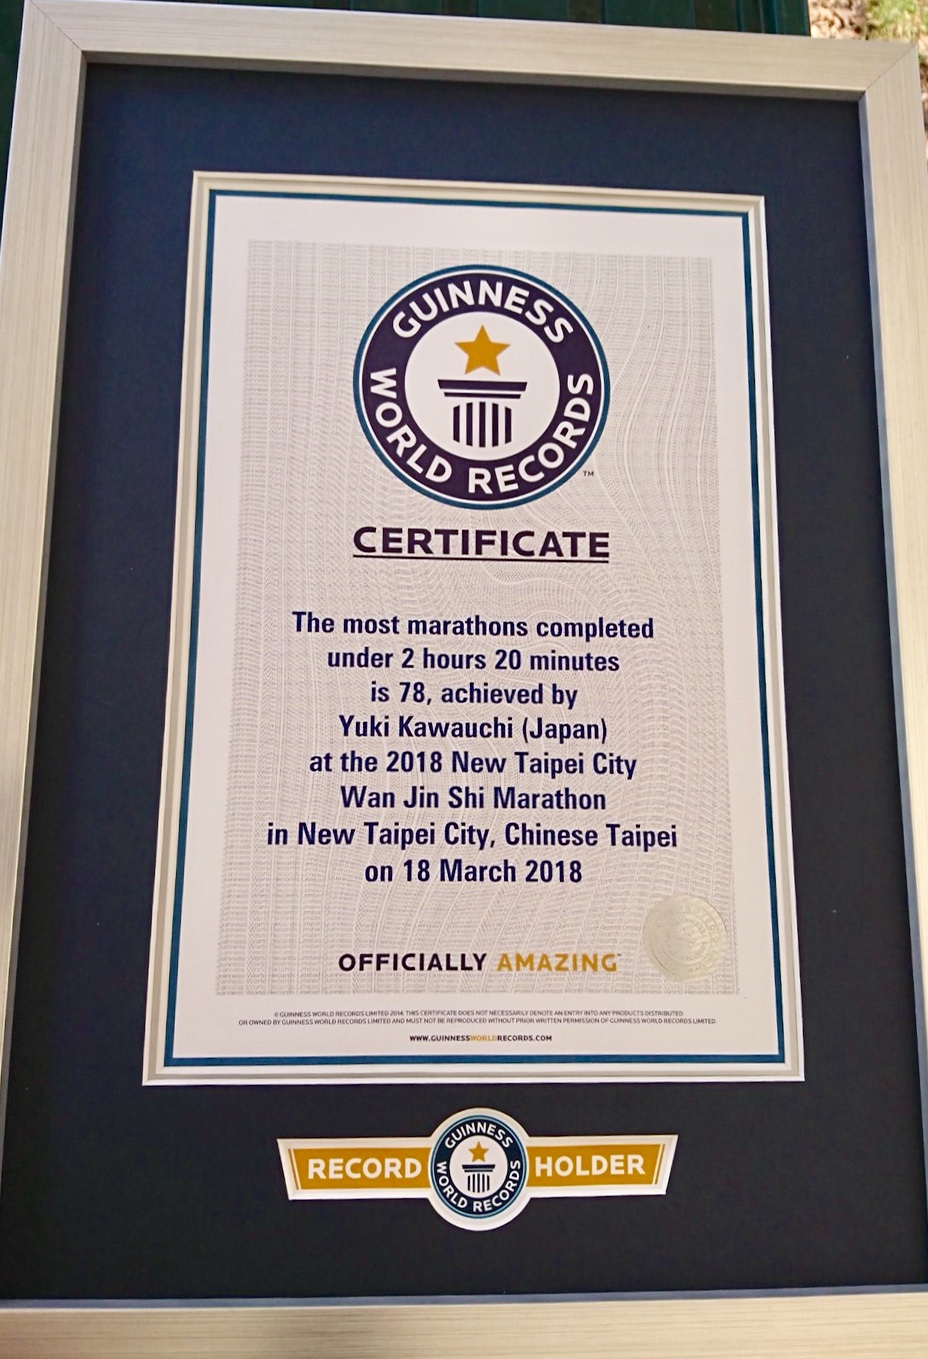 Guinness Certifies Kawauchi's World Record 78 Career Sub-2:20 Marathons ...